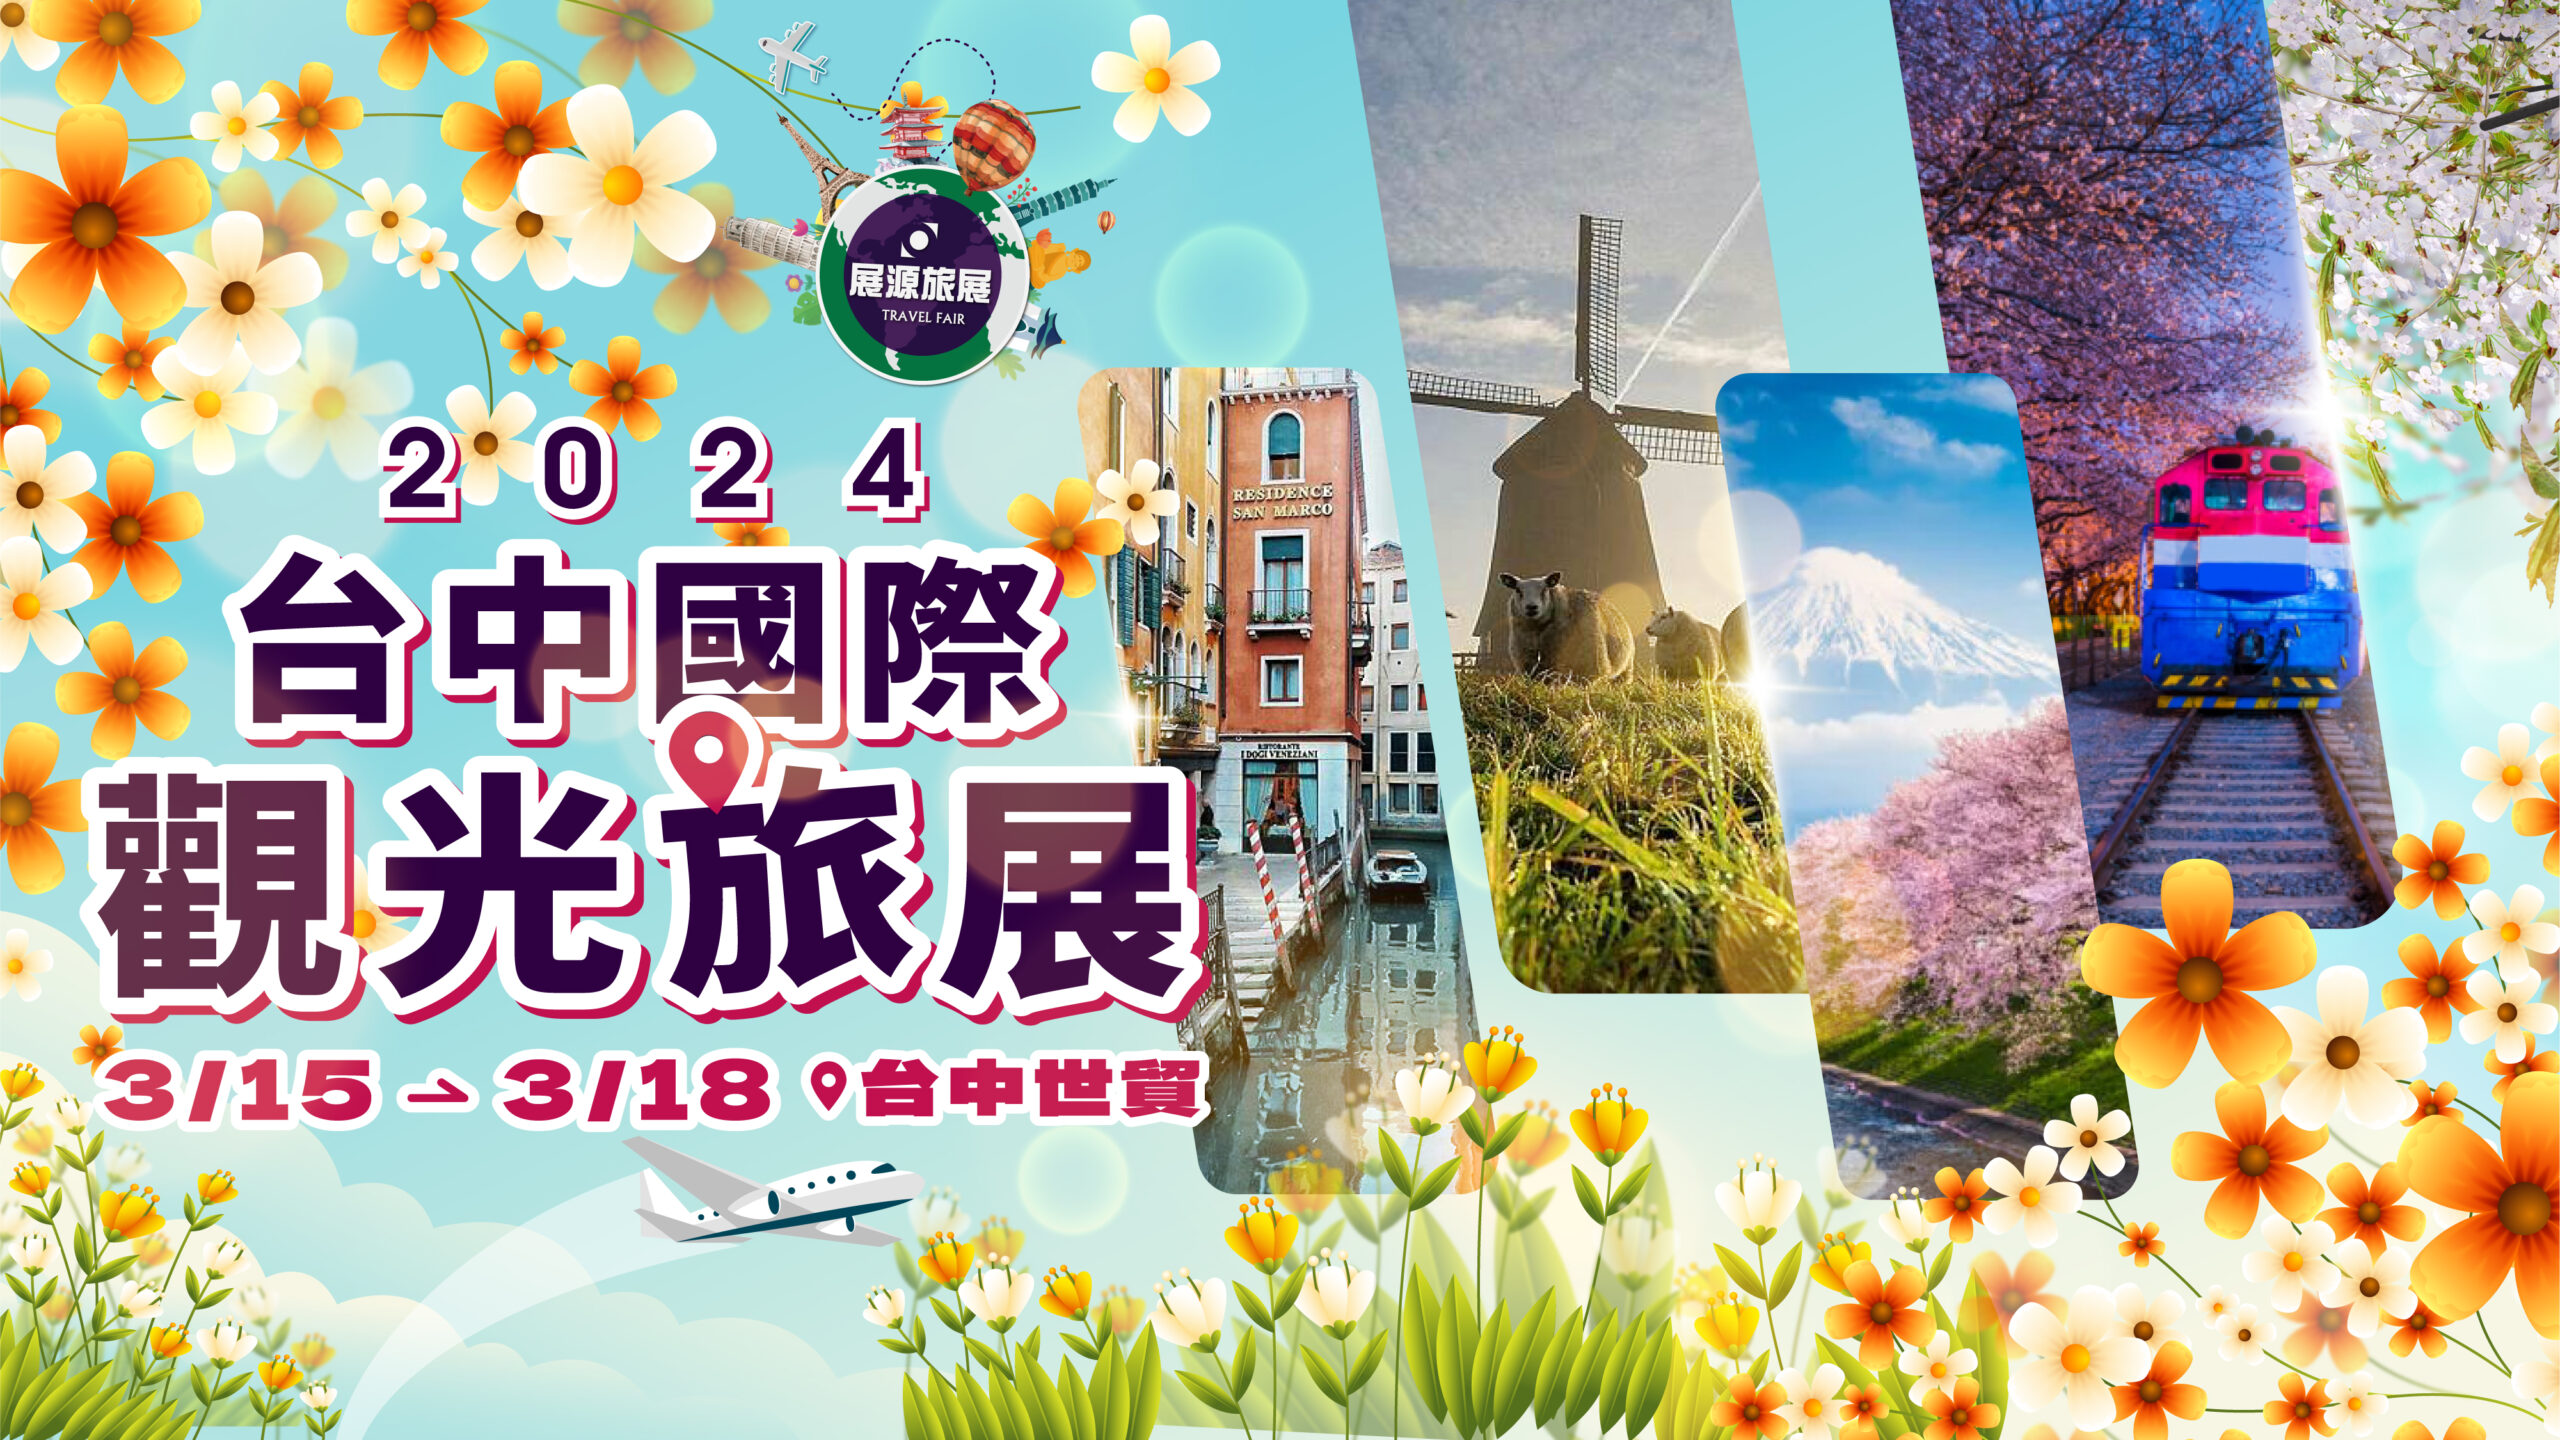 台中國際觀光旅展